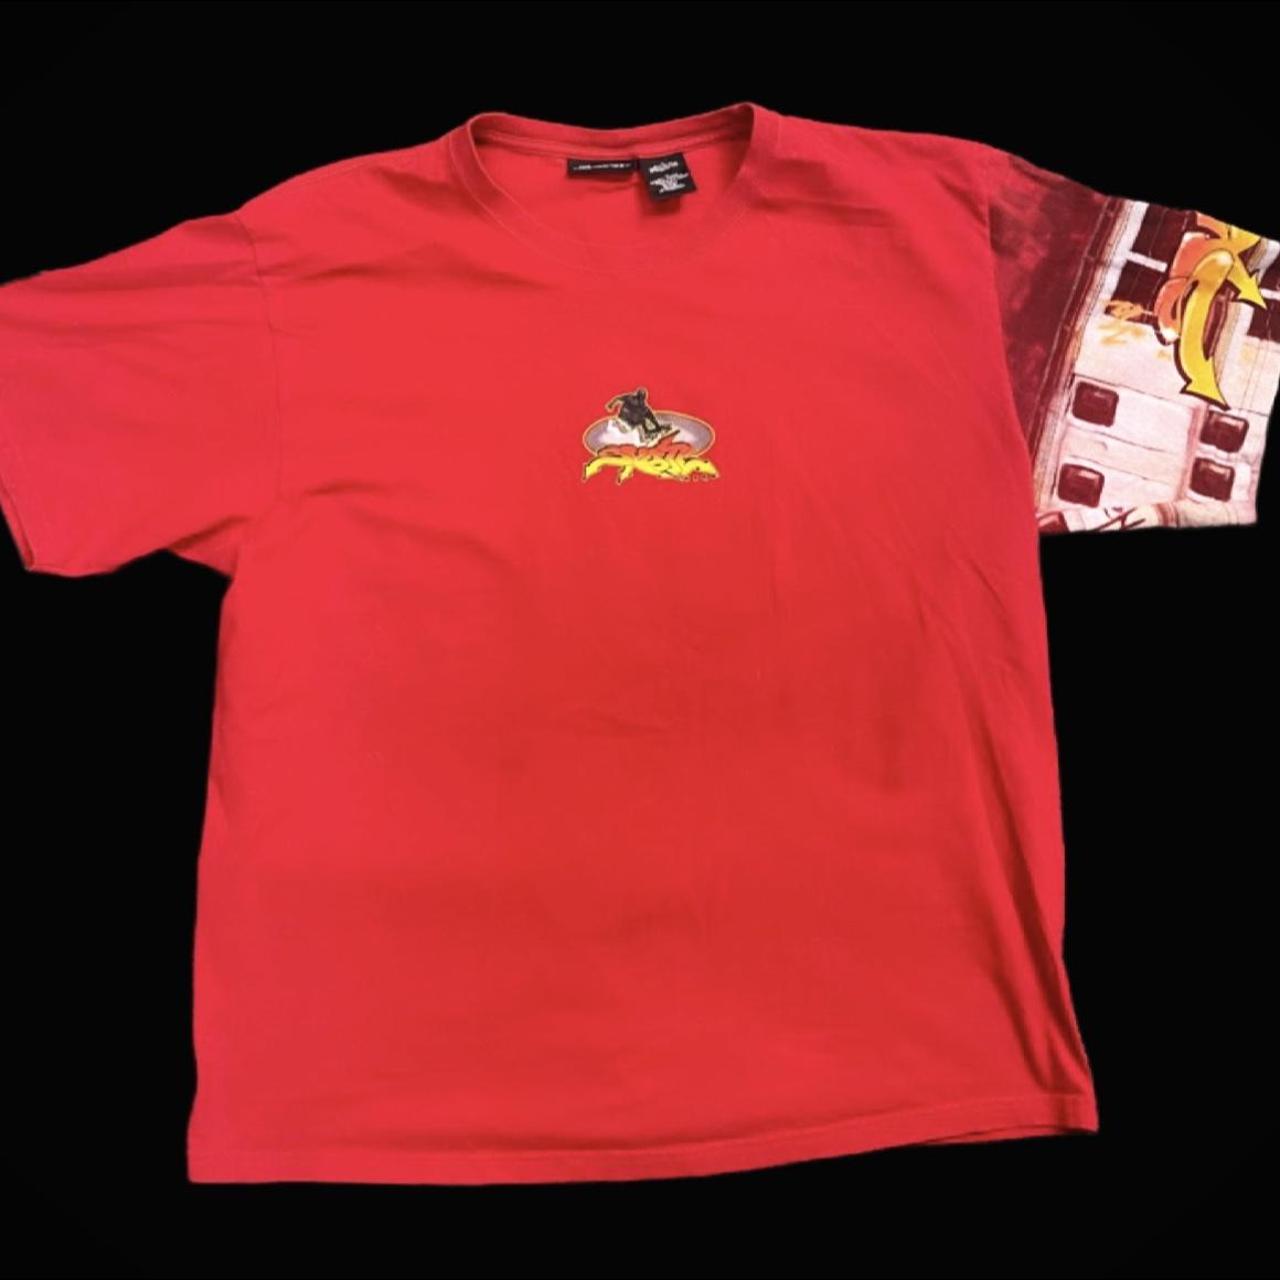 Product Image 2 - Vintage AOP Skate T-Shirt, Men’s